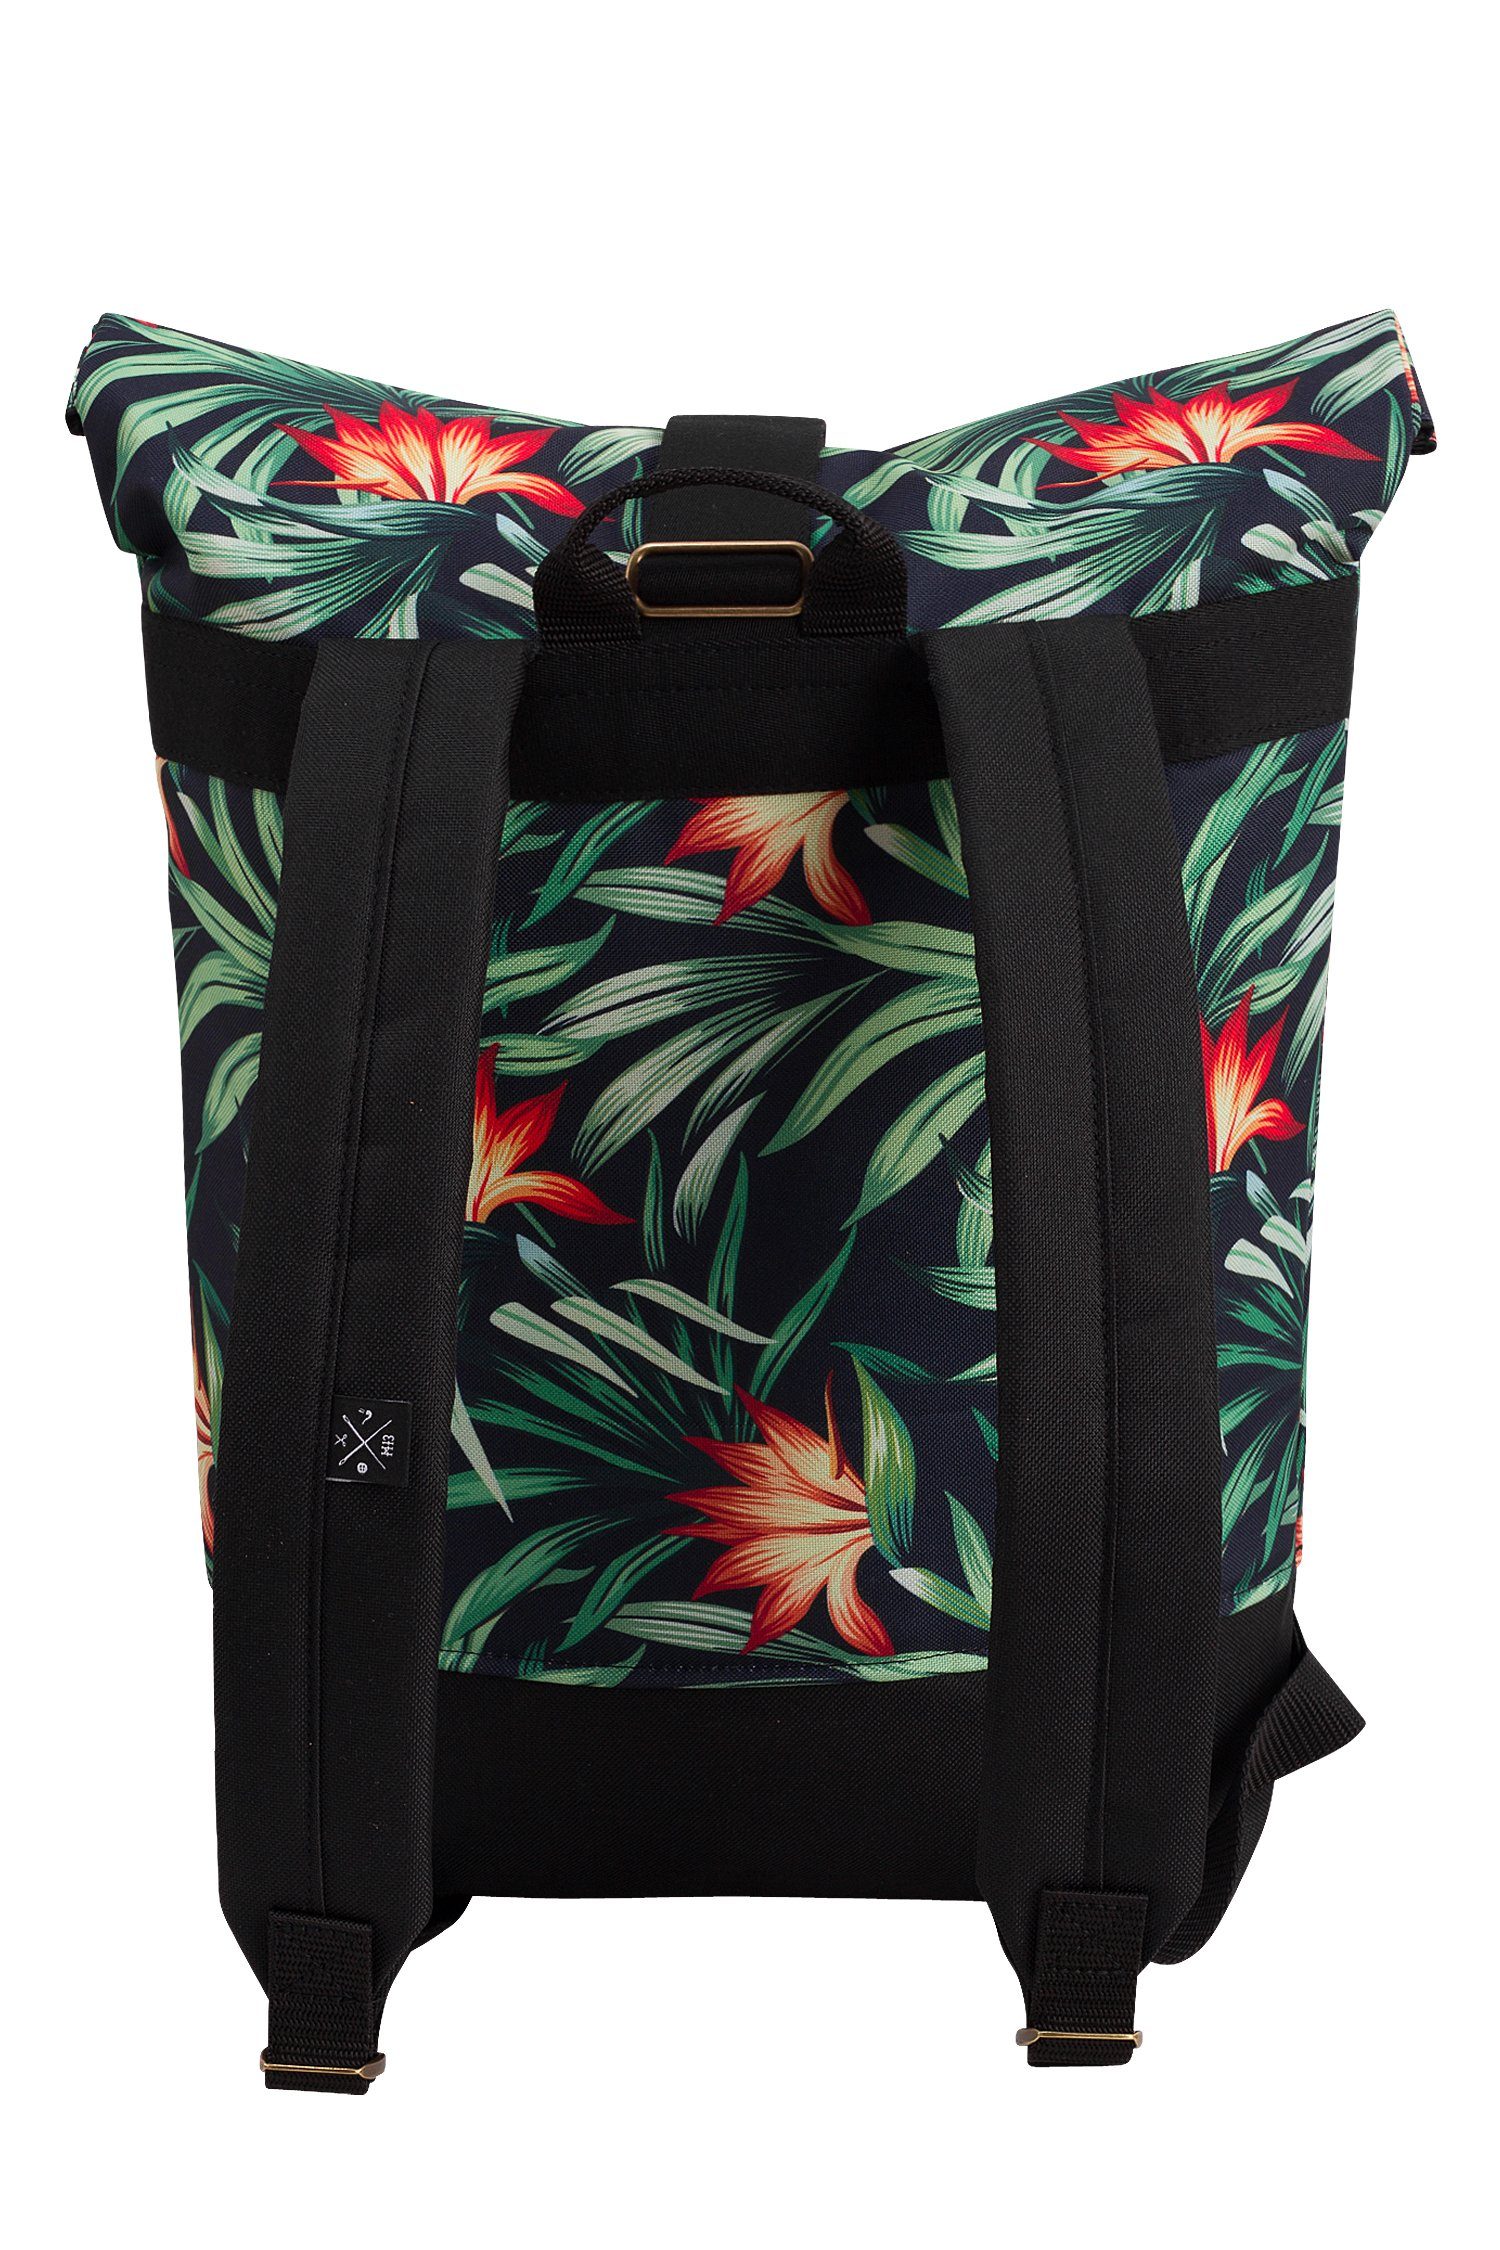 Rollverschluss, Rucksack wasserdicht/wasserabweisend, verstellbare mit Mini - Backpack Tagesrucksack Manufaktur13 Gurte Corvo Roll-Top